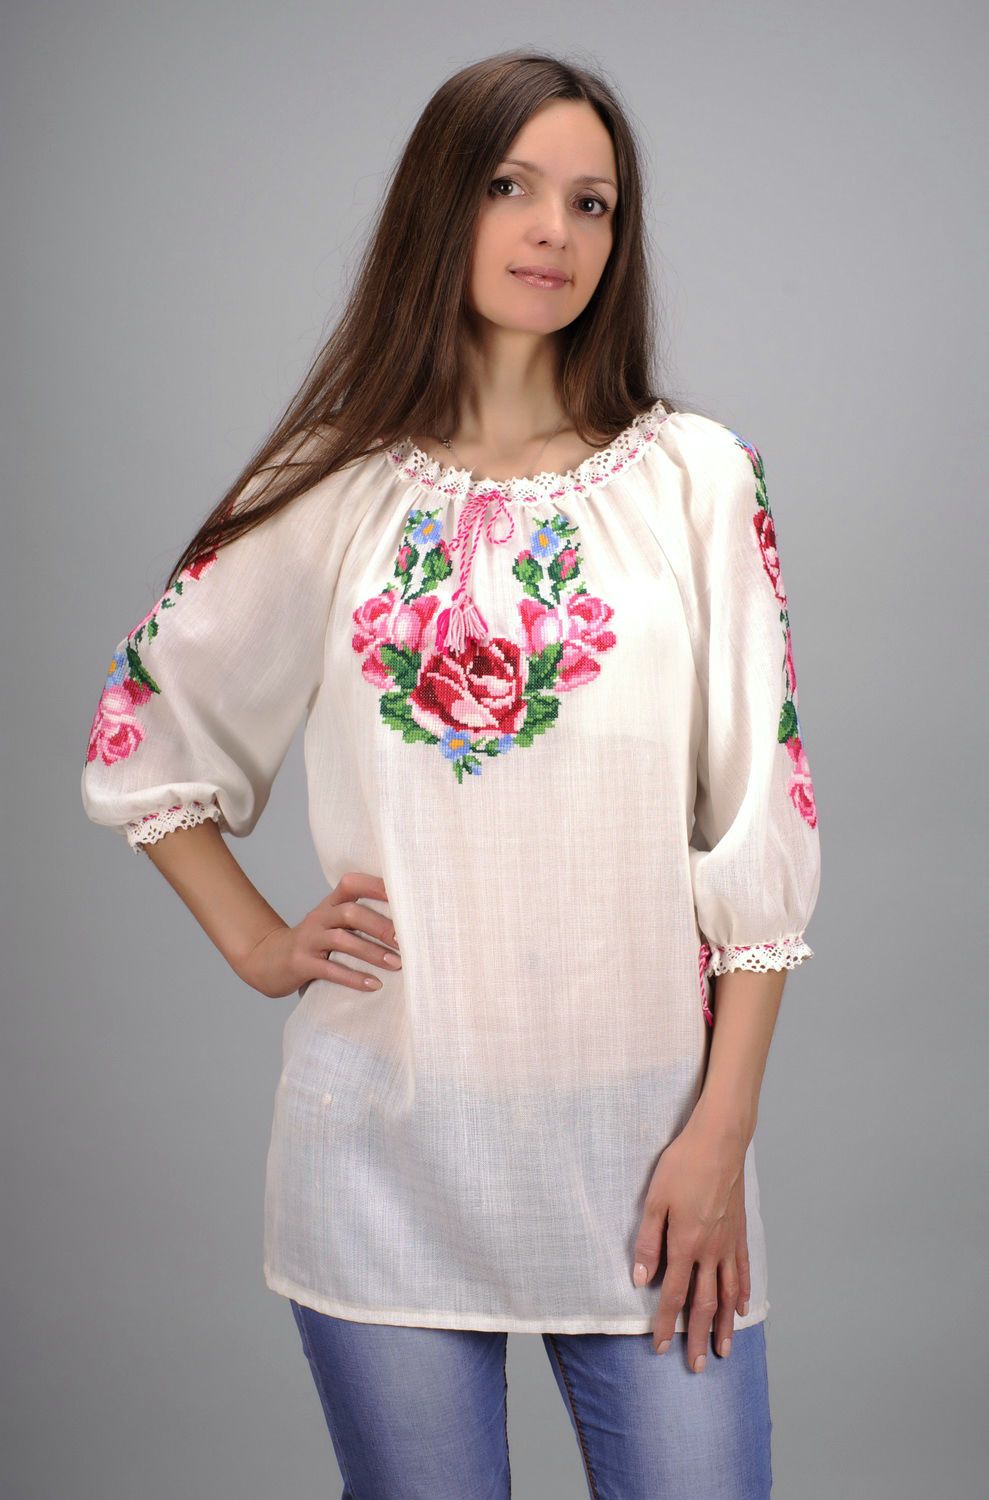 Ethnic blouse Vyshyvanka with roses photo 1